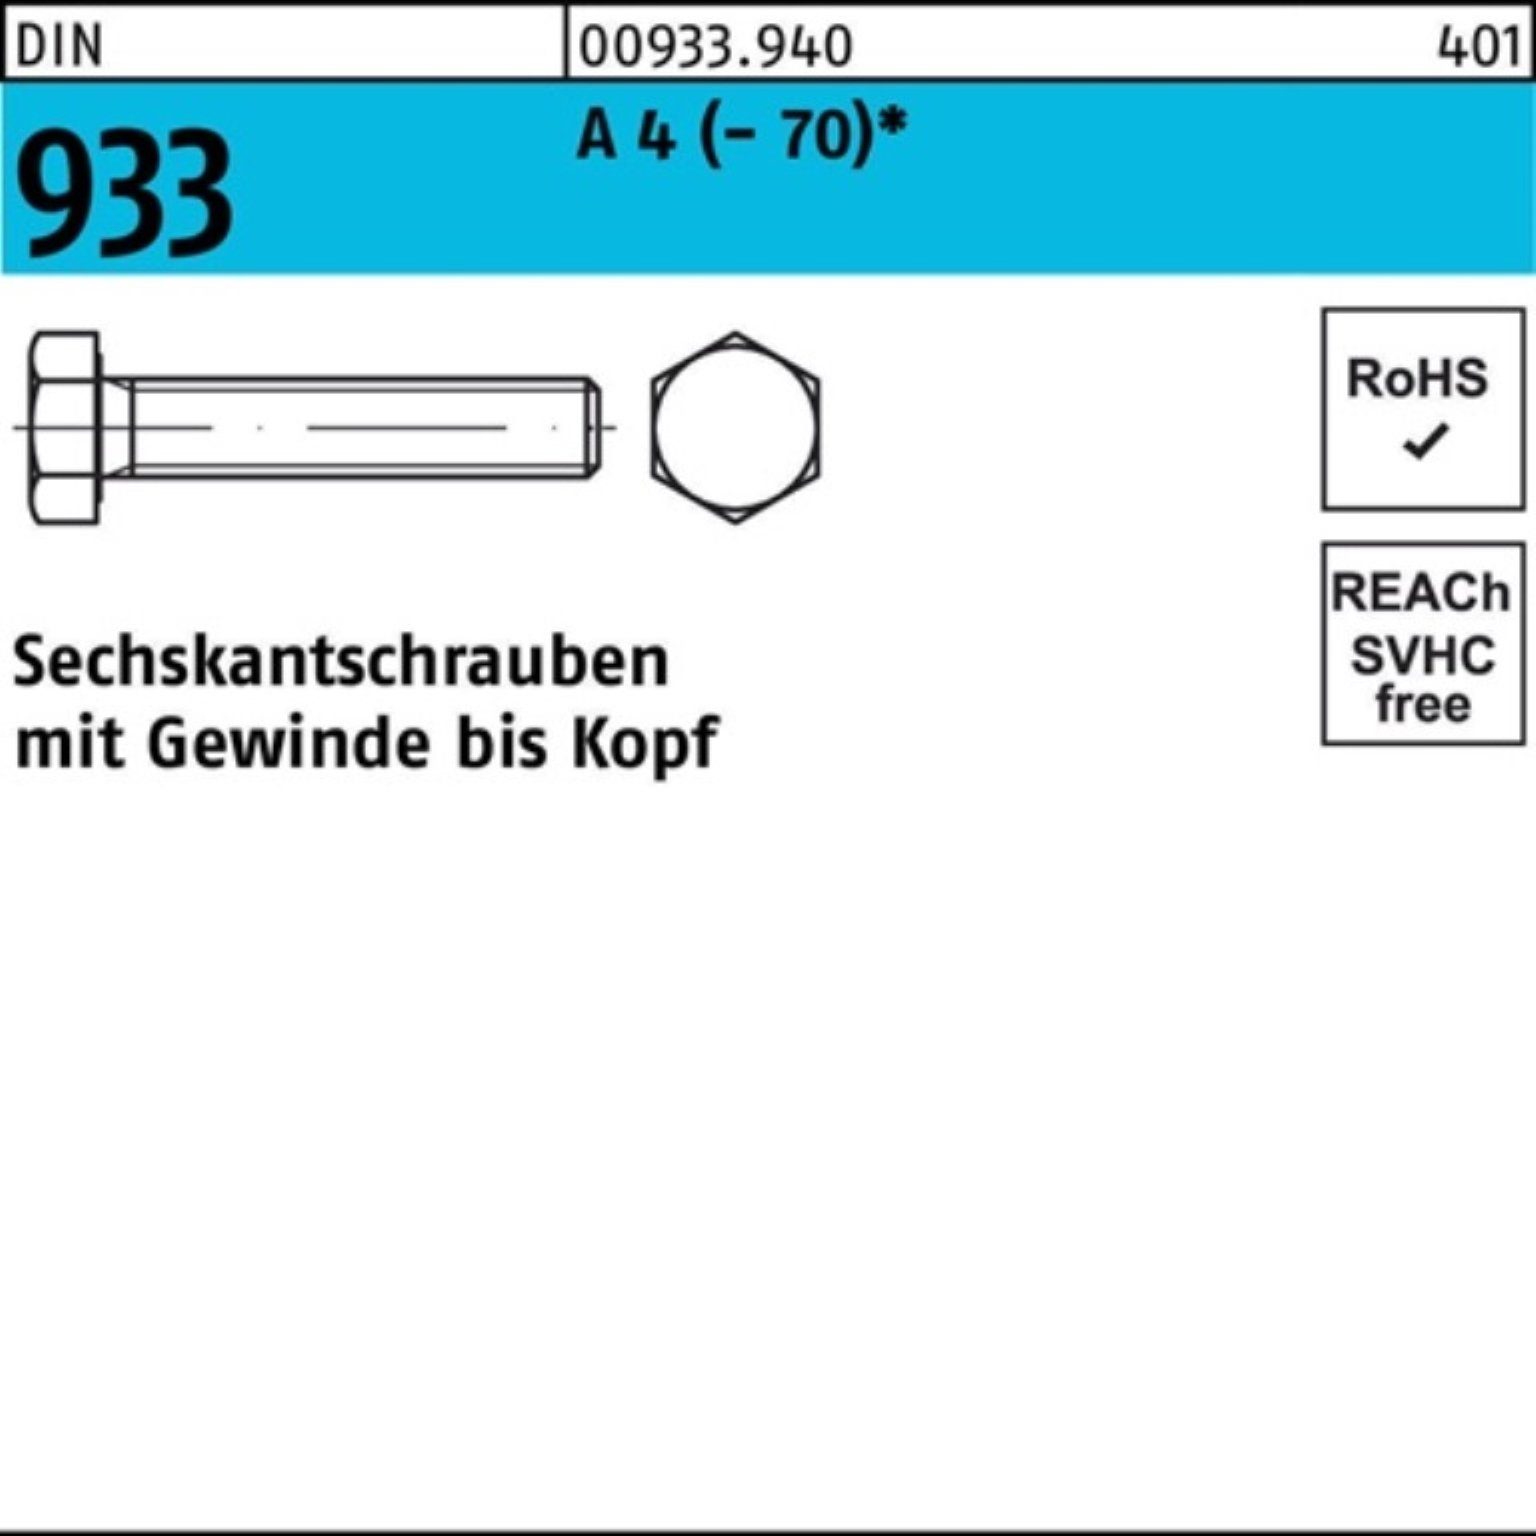 200 M4x (70) D 16 933 Reyher Pack Sechskantschraube A Sechskantschraube 200er DIN Stück 4 VG